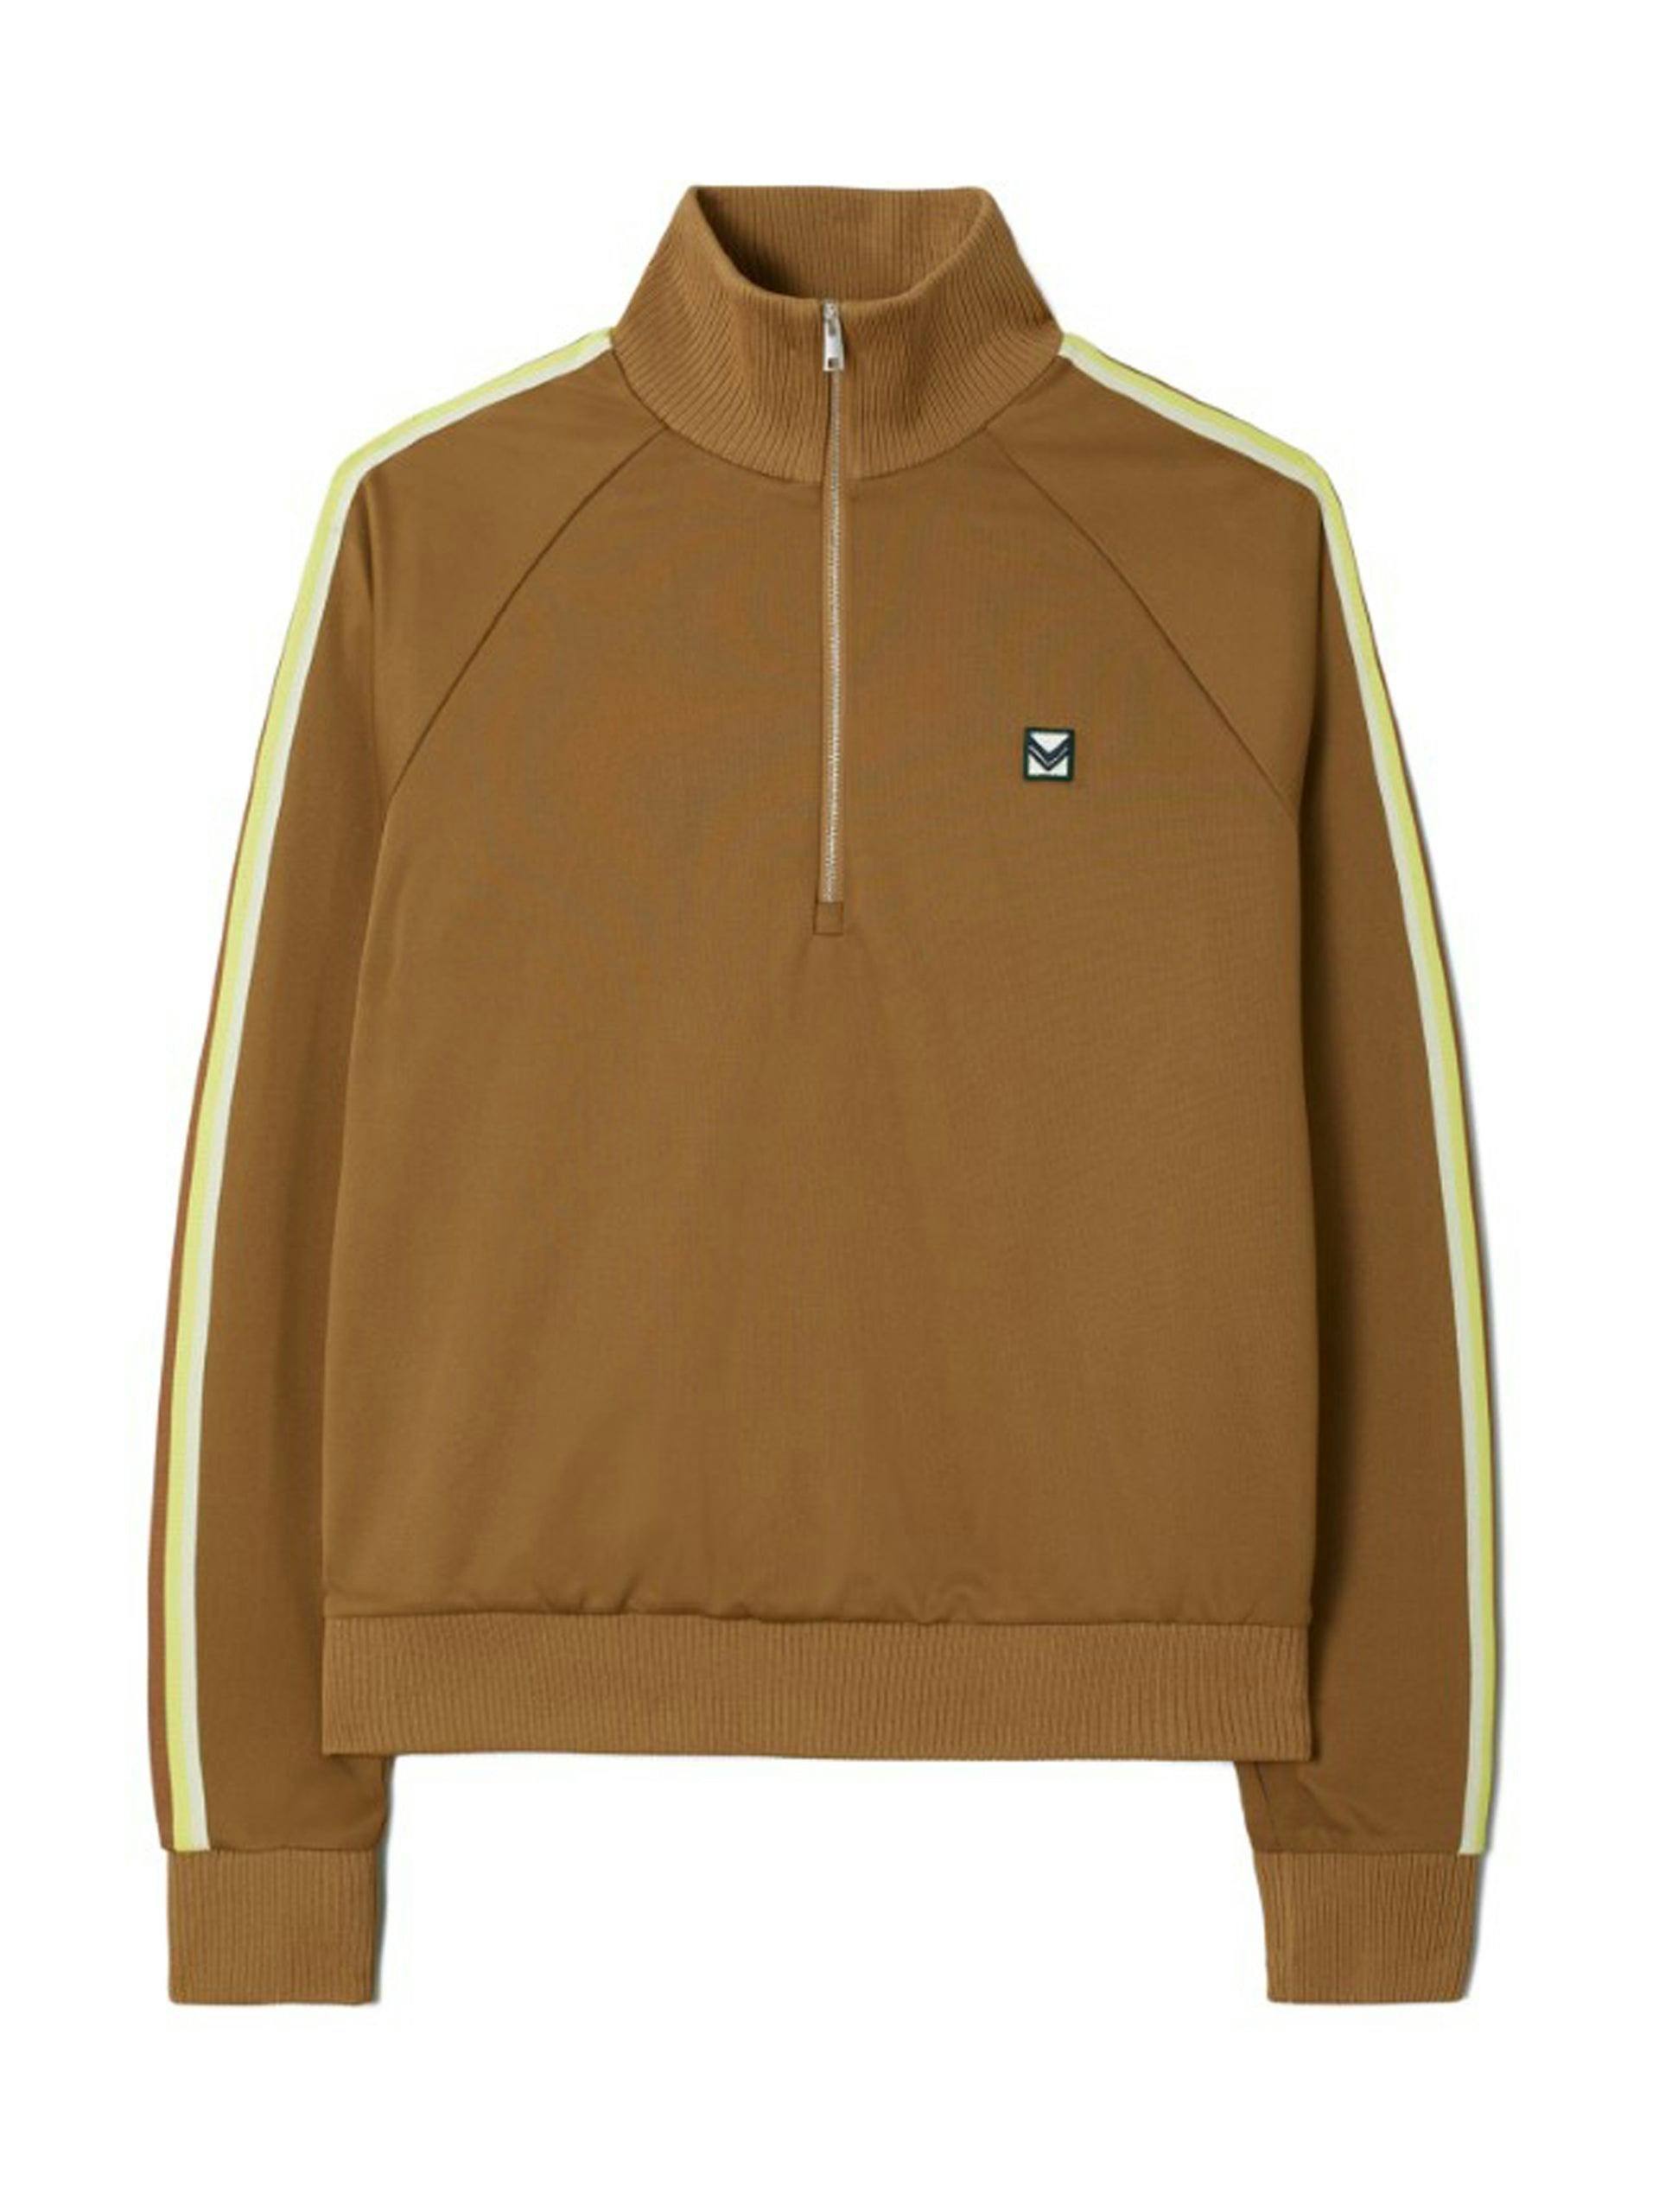 Brown half-zip track jacket